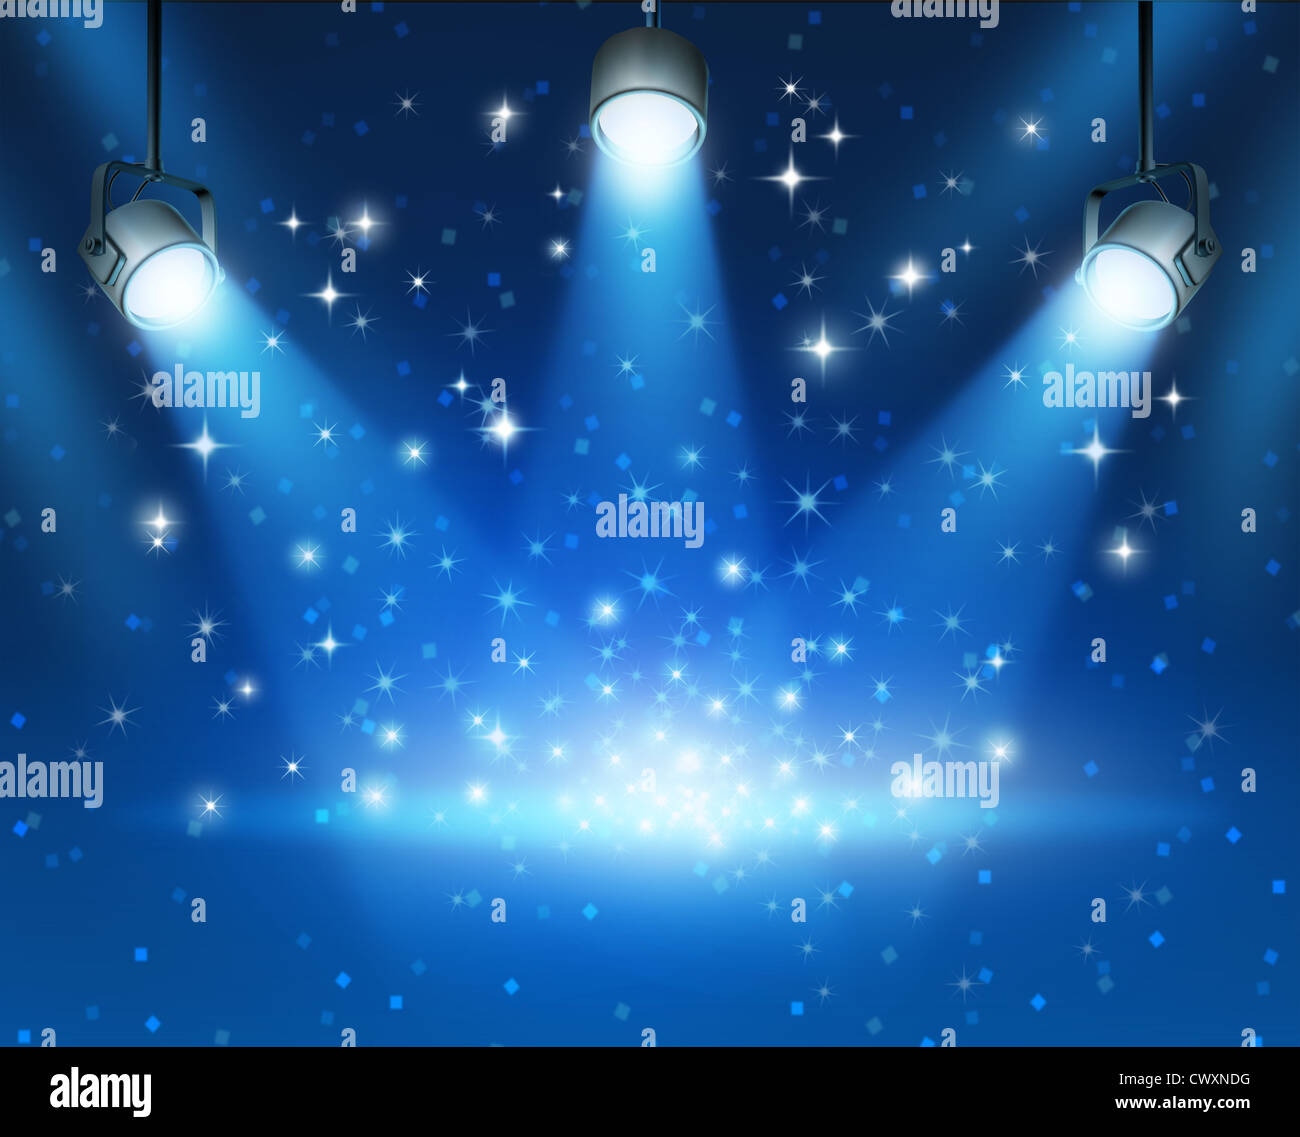 Magica blu immagine astratta di illuminazione concerto contro un buio incandescente illustrazione dello sfondo con brillantini lucido con un bianco Foto Stock